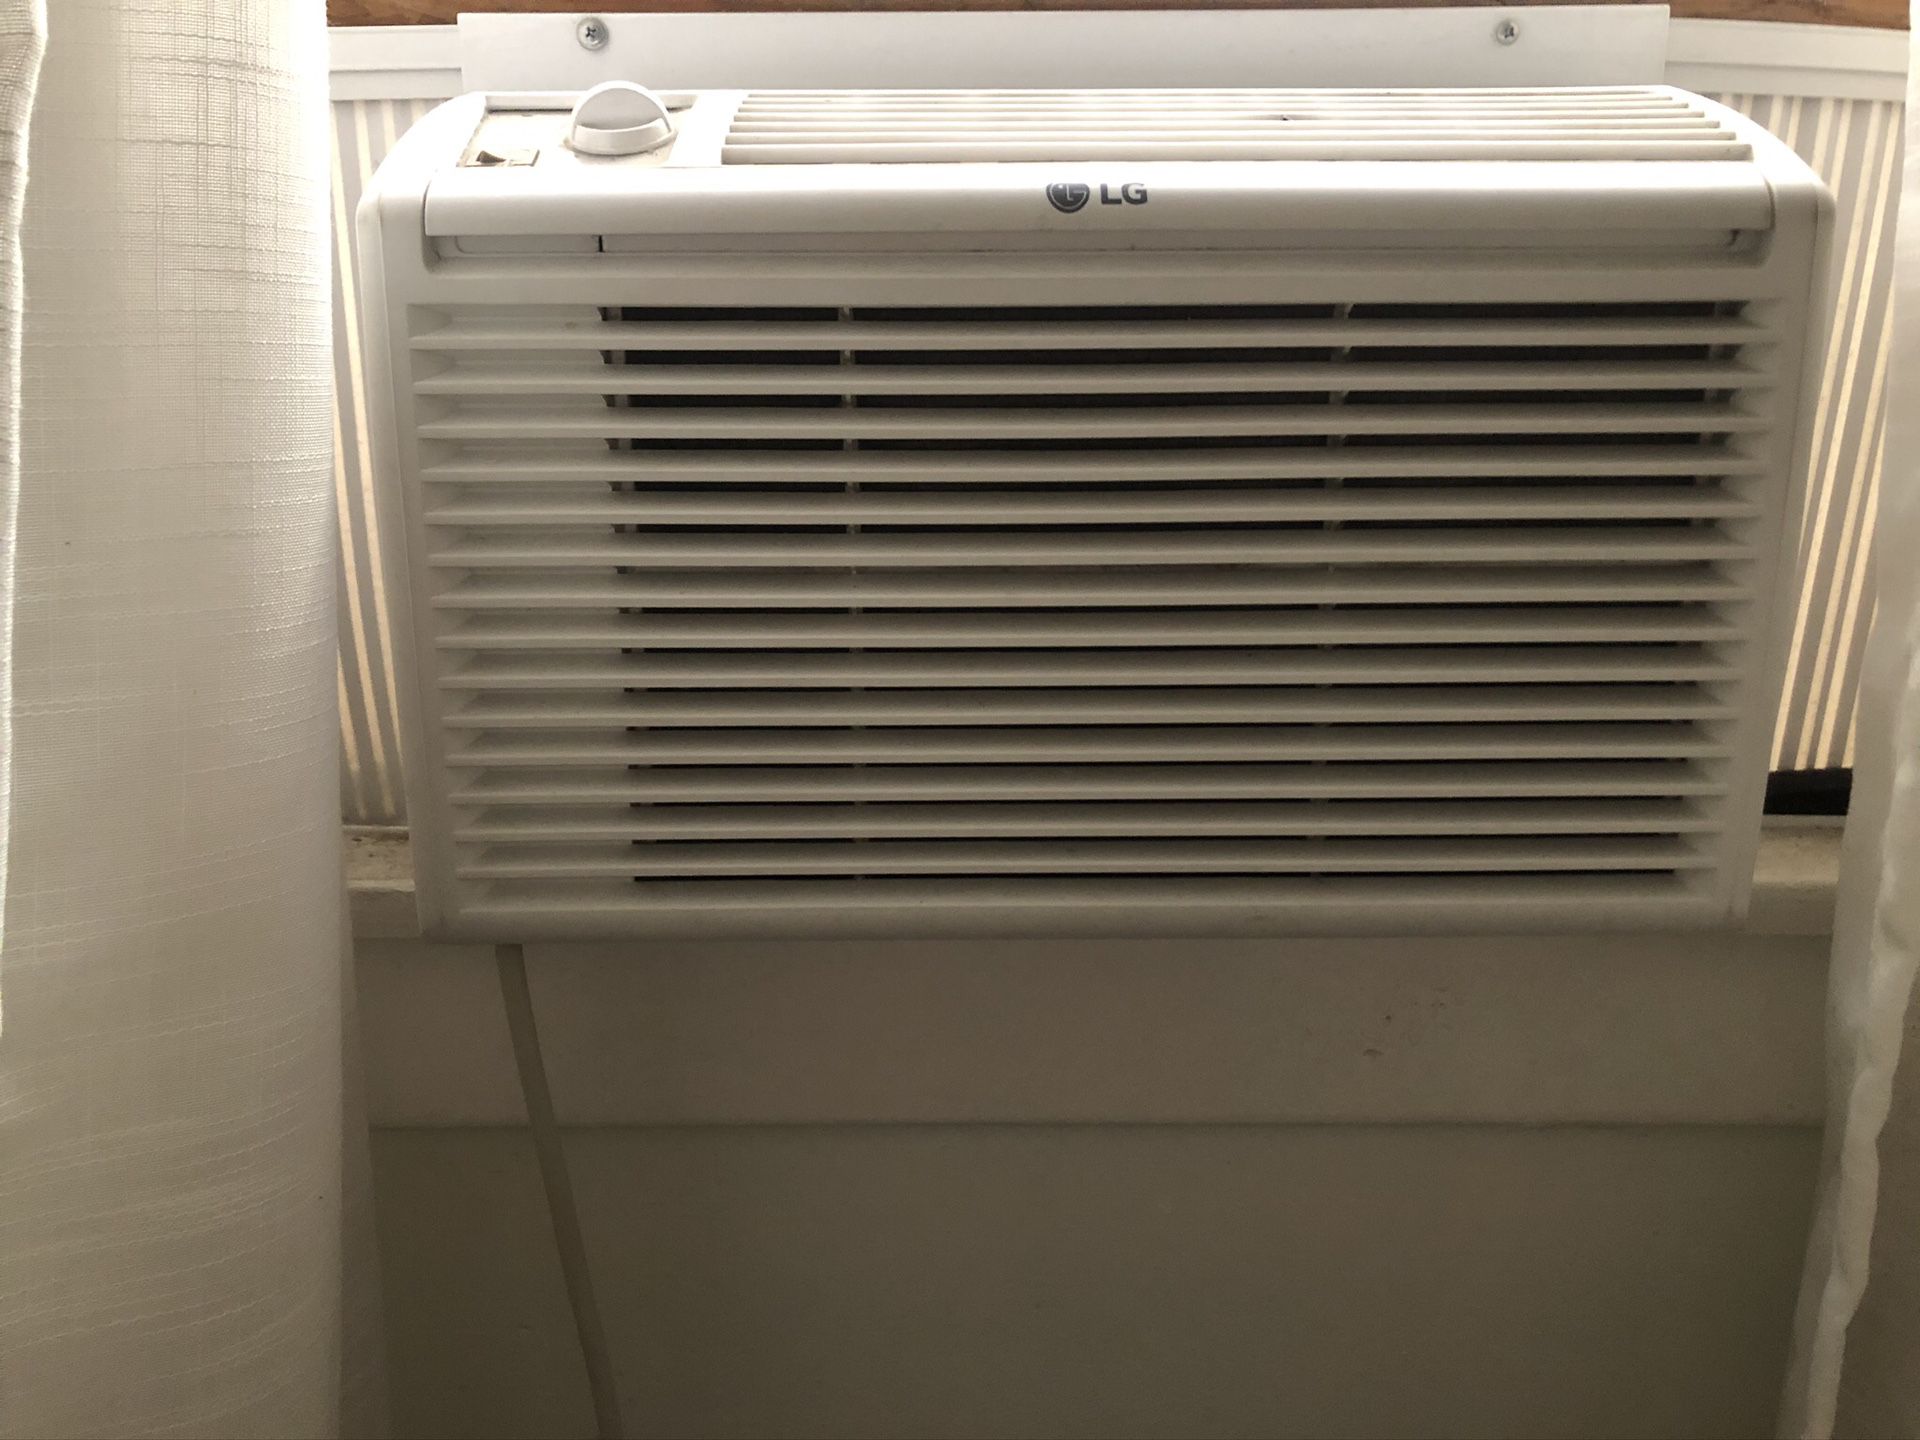 Window Unit Air Conditioner (2 of 3) - 5000 BTU